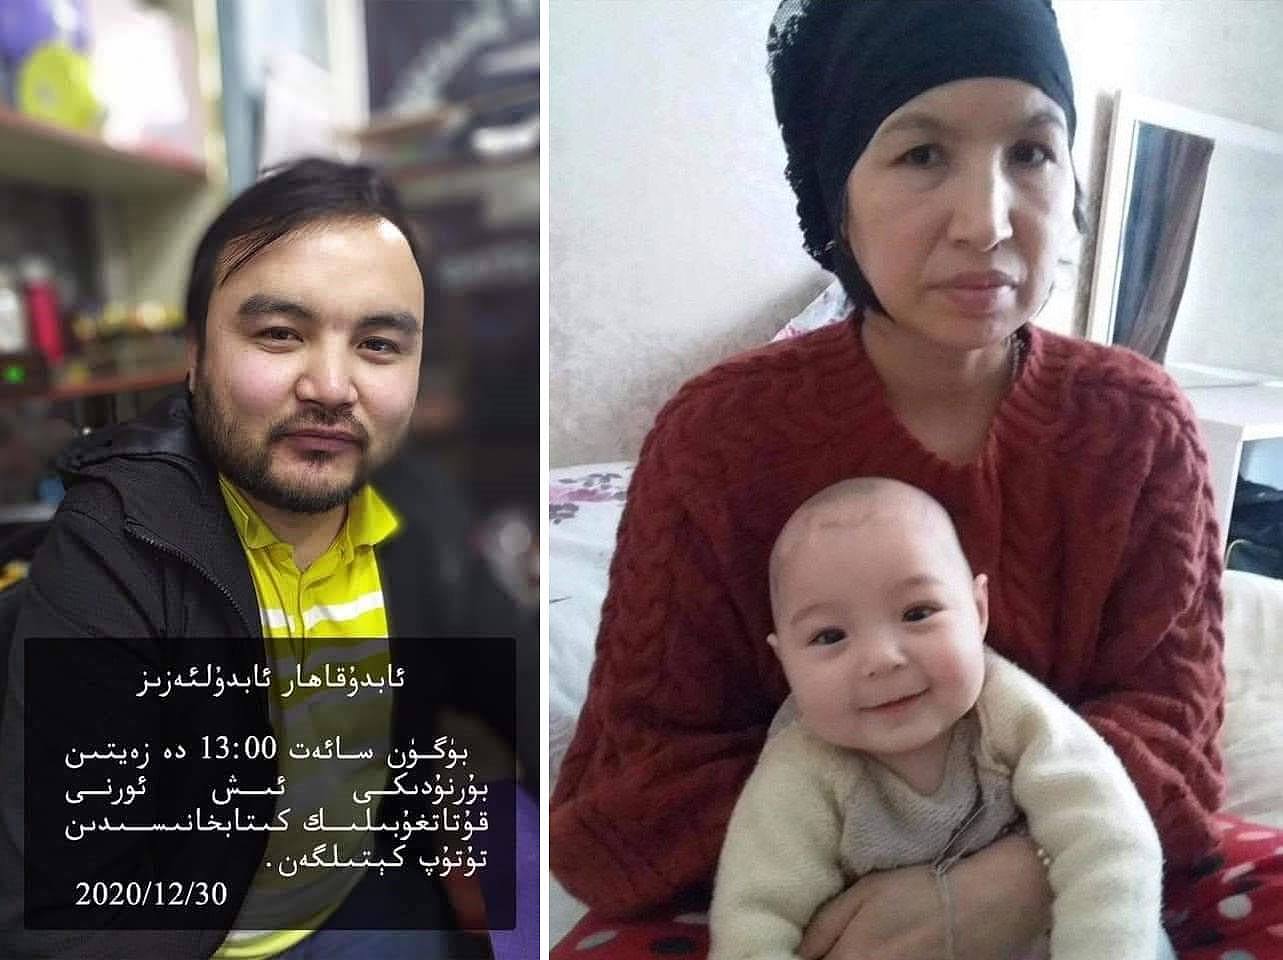 左图：“脸书”上透露的维吾尔男子阿布杜喀哈尔·阿布杜乐艾孜被捕消息。（来自“脸书”）；右图：被捕的维吾尔女子阿米乃木·拜克尔和她的孩子。（来自土耳其媒体《国民报》）